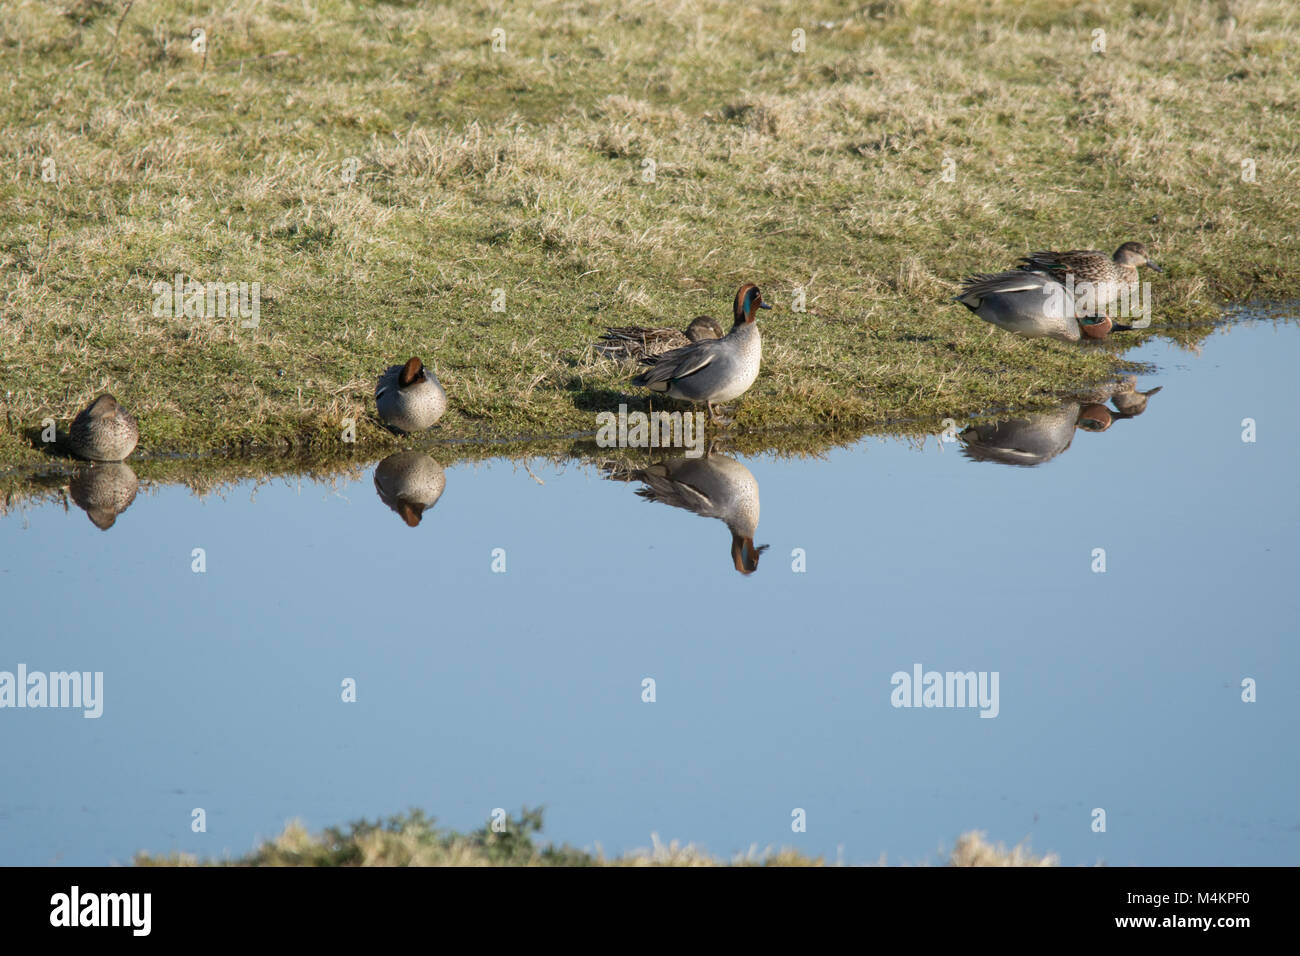 Diversi teal (Anas crecca) sul bordo dell'acqua con riflessi, anatre, uccelli, Regno Unito Foto Stock